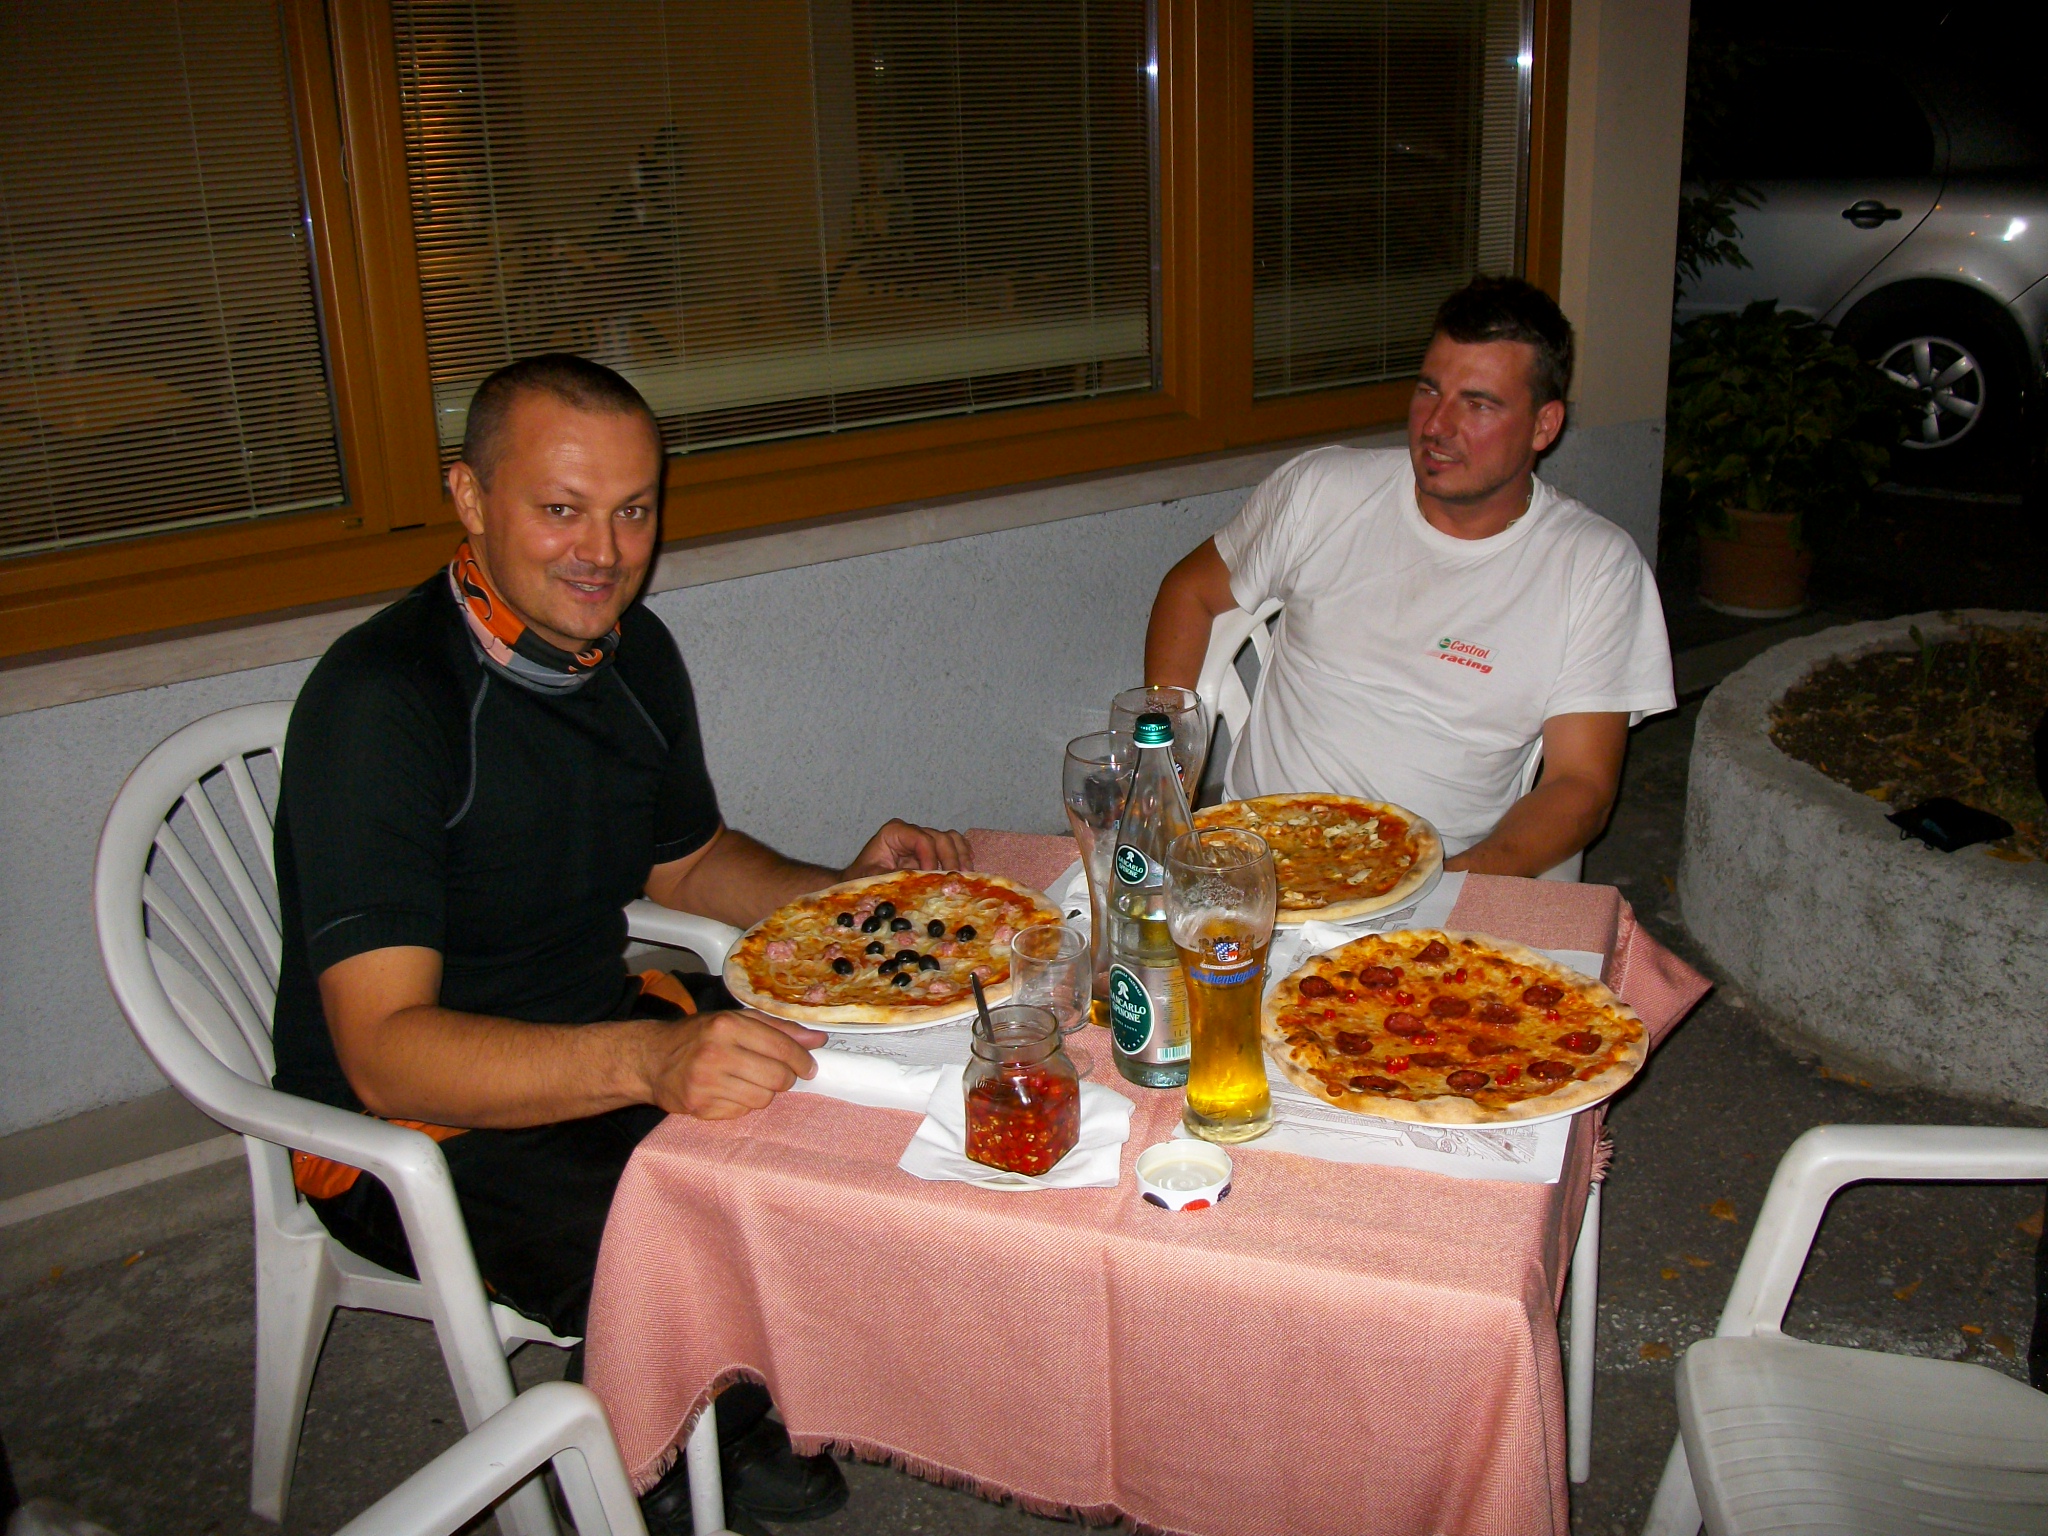 Kifogástalan vendéglátás: friss, forró pizza este tízkor